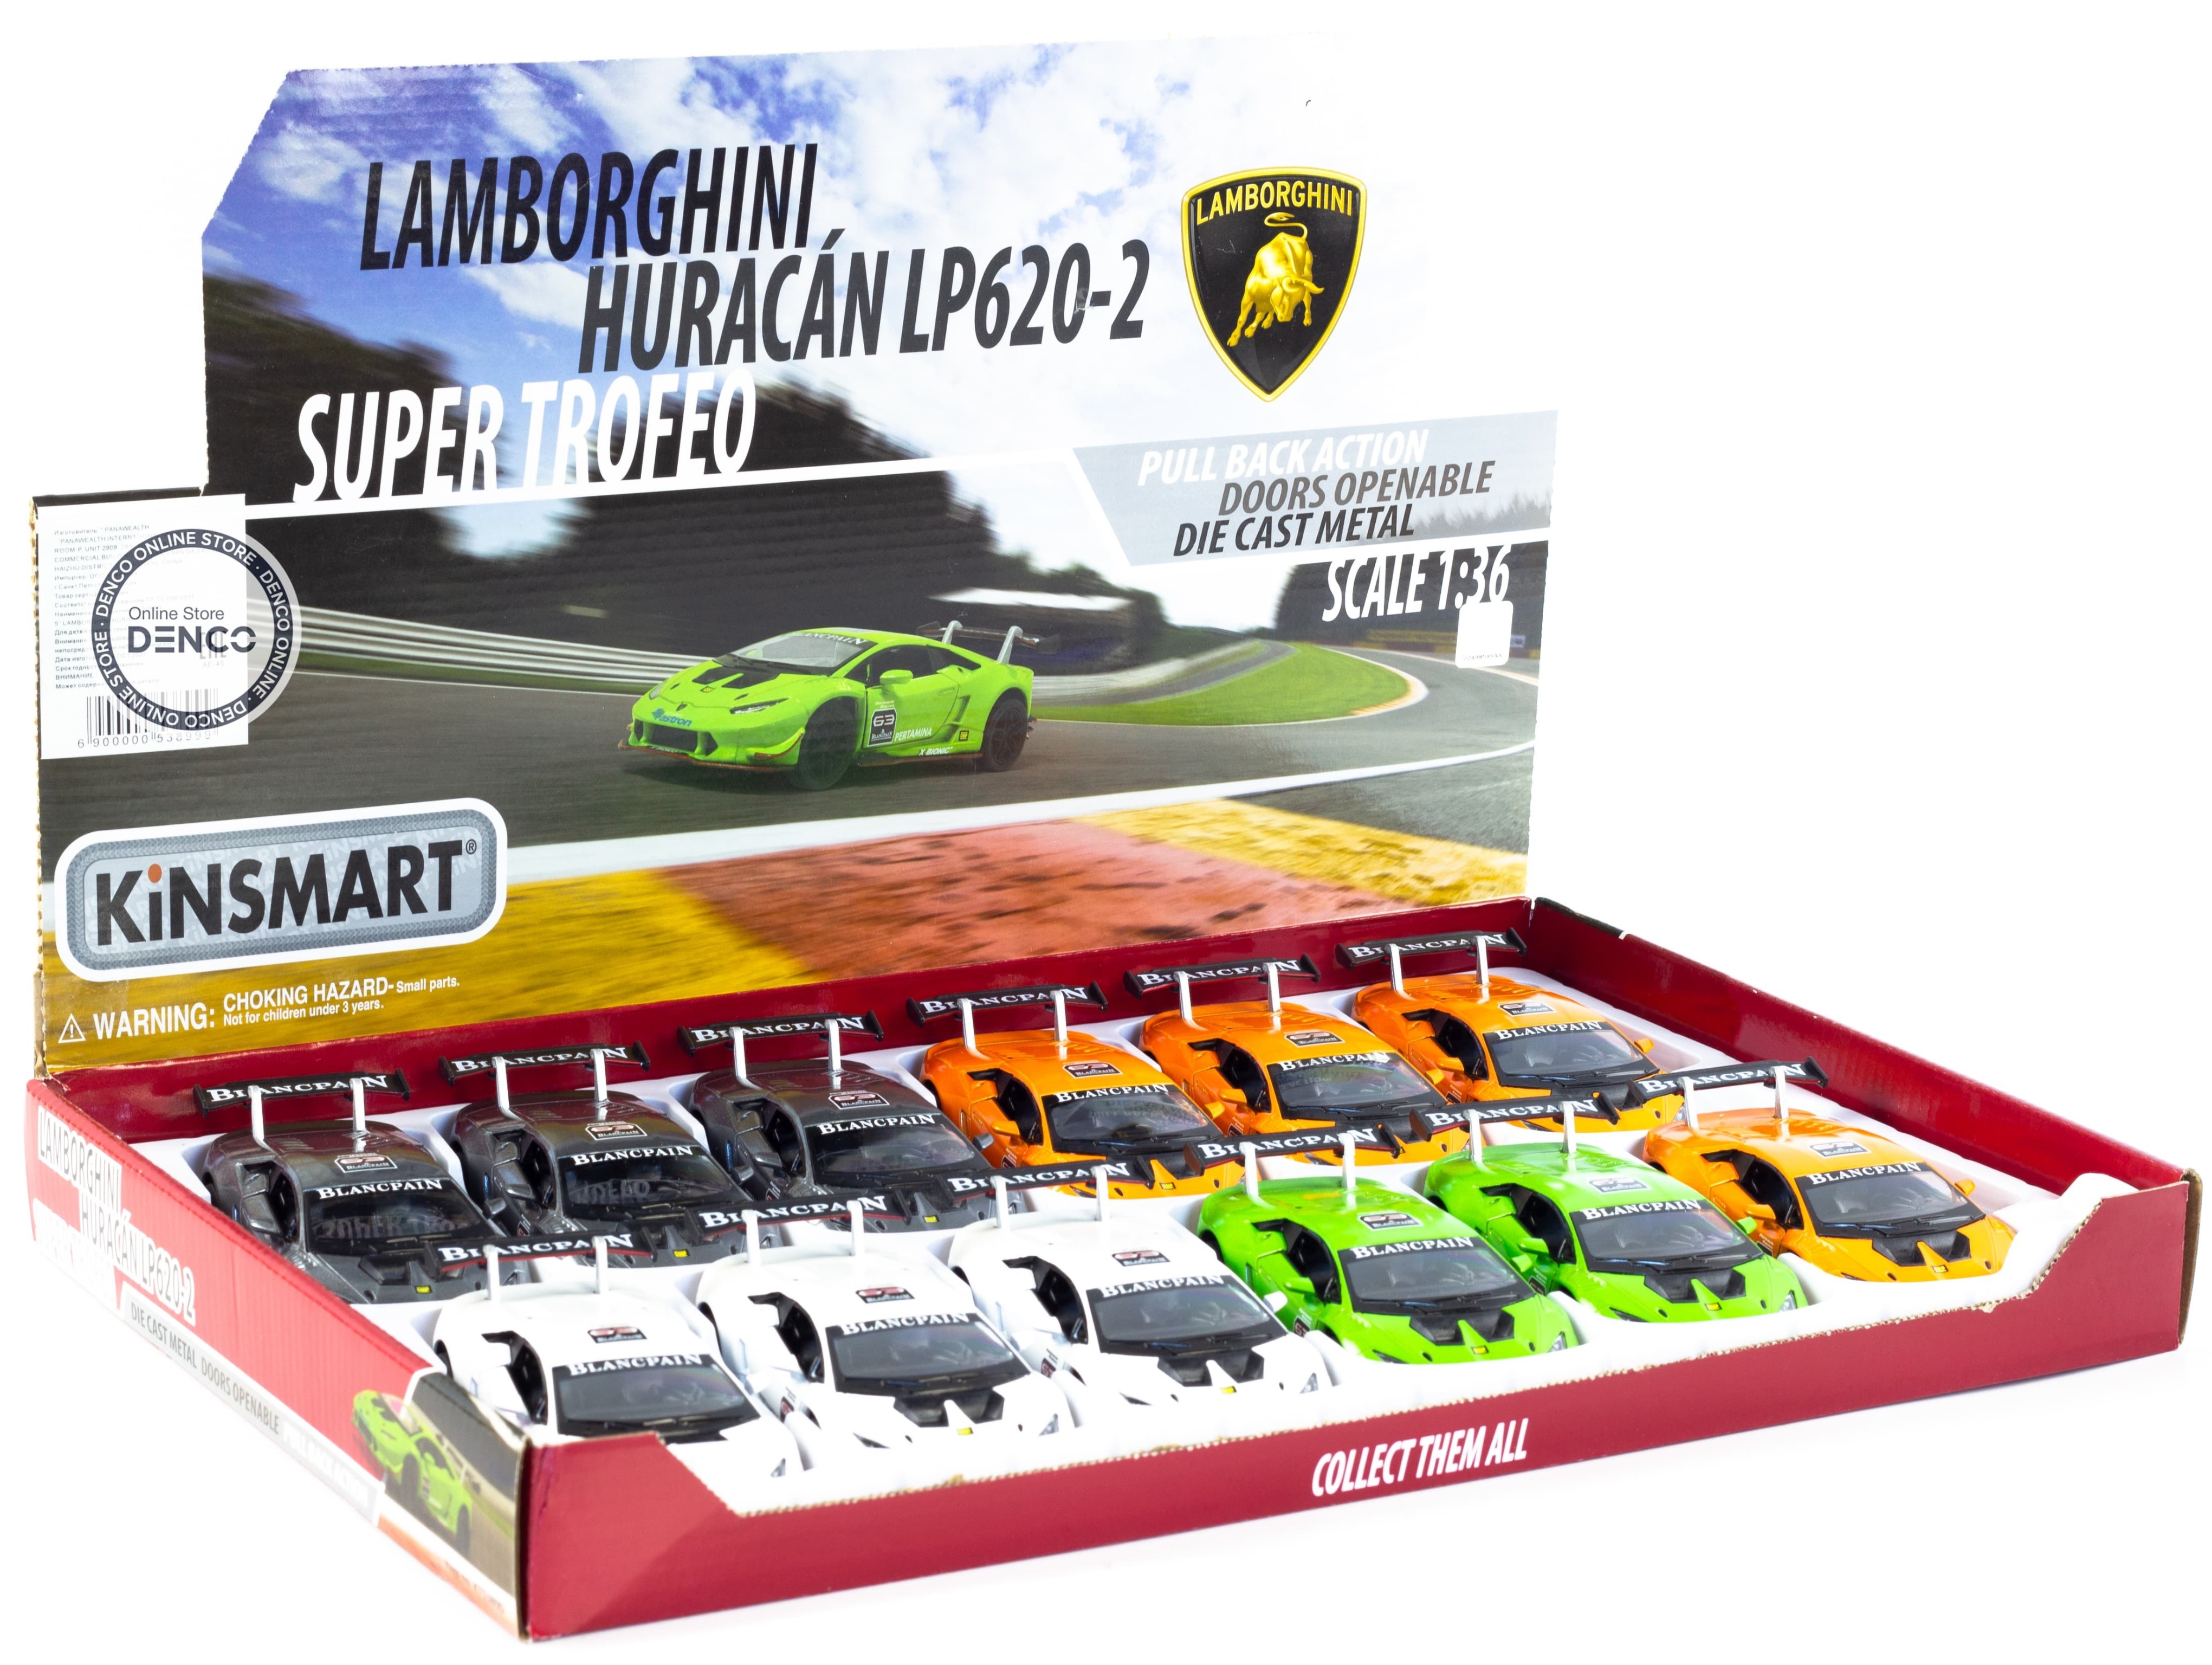 Металлическая машинка Kinsmart 1:36 «Lamborghini Huracan LP620-2 Super Trofeo» KT5389D, инерционная / Серый